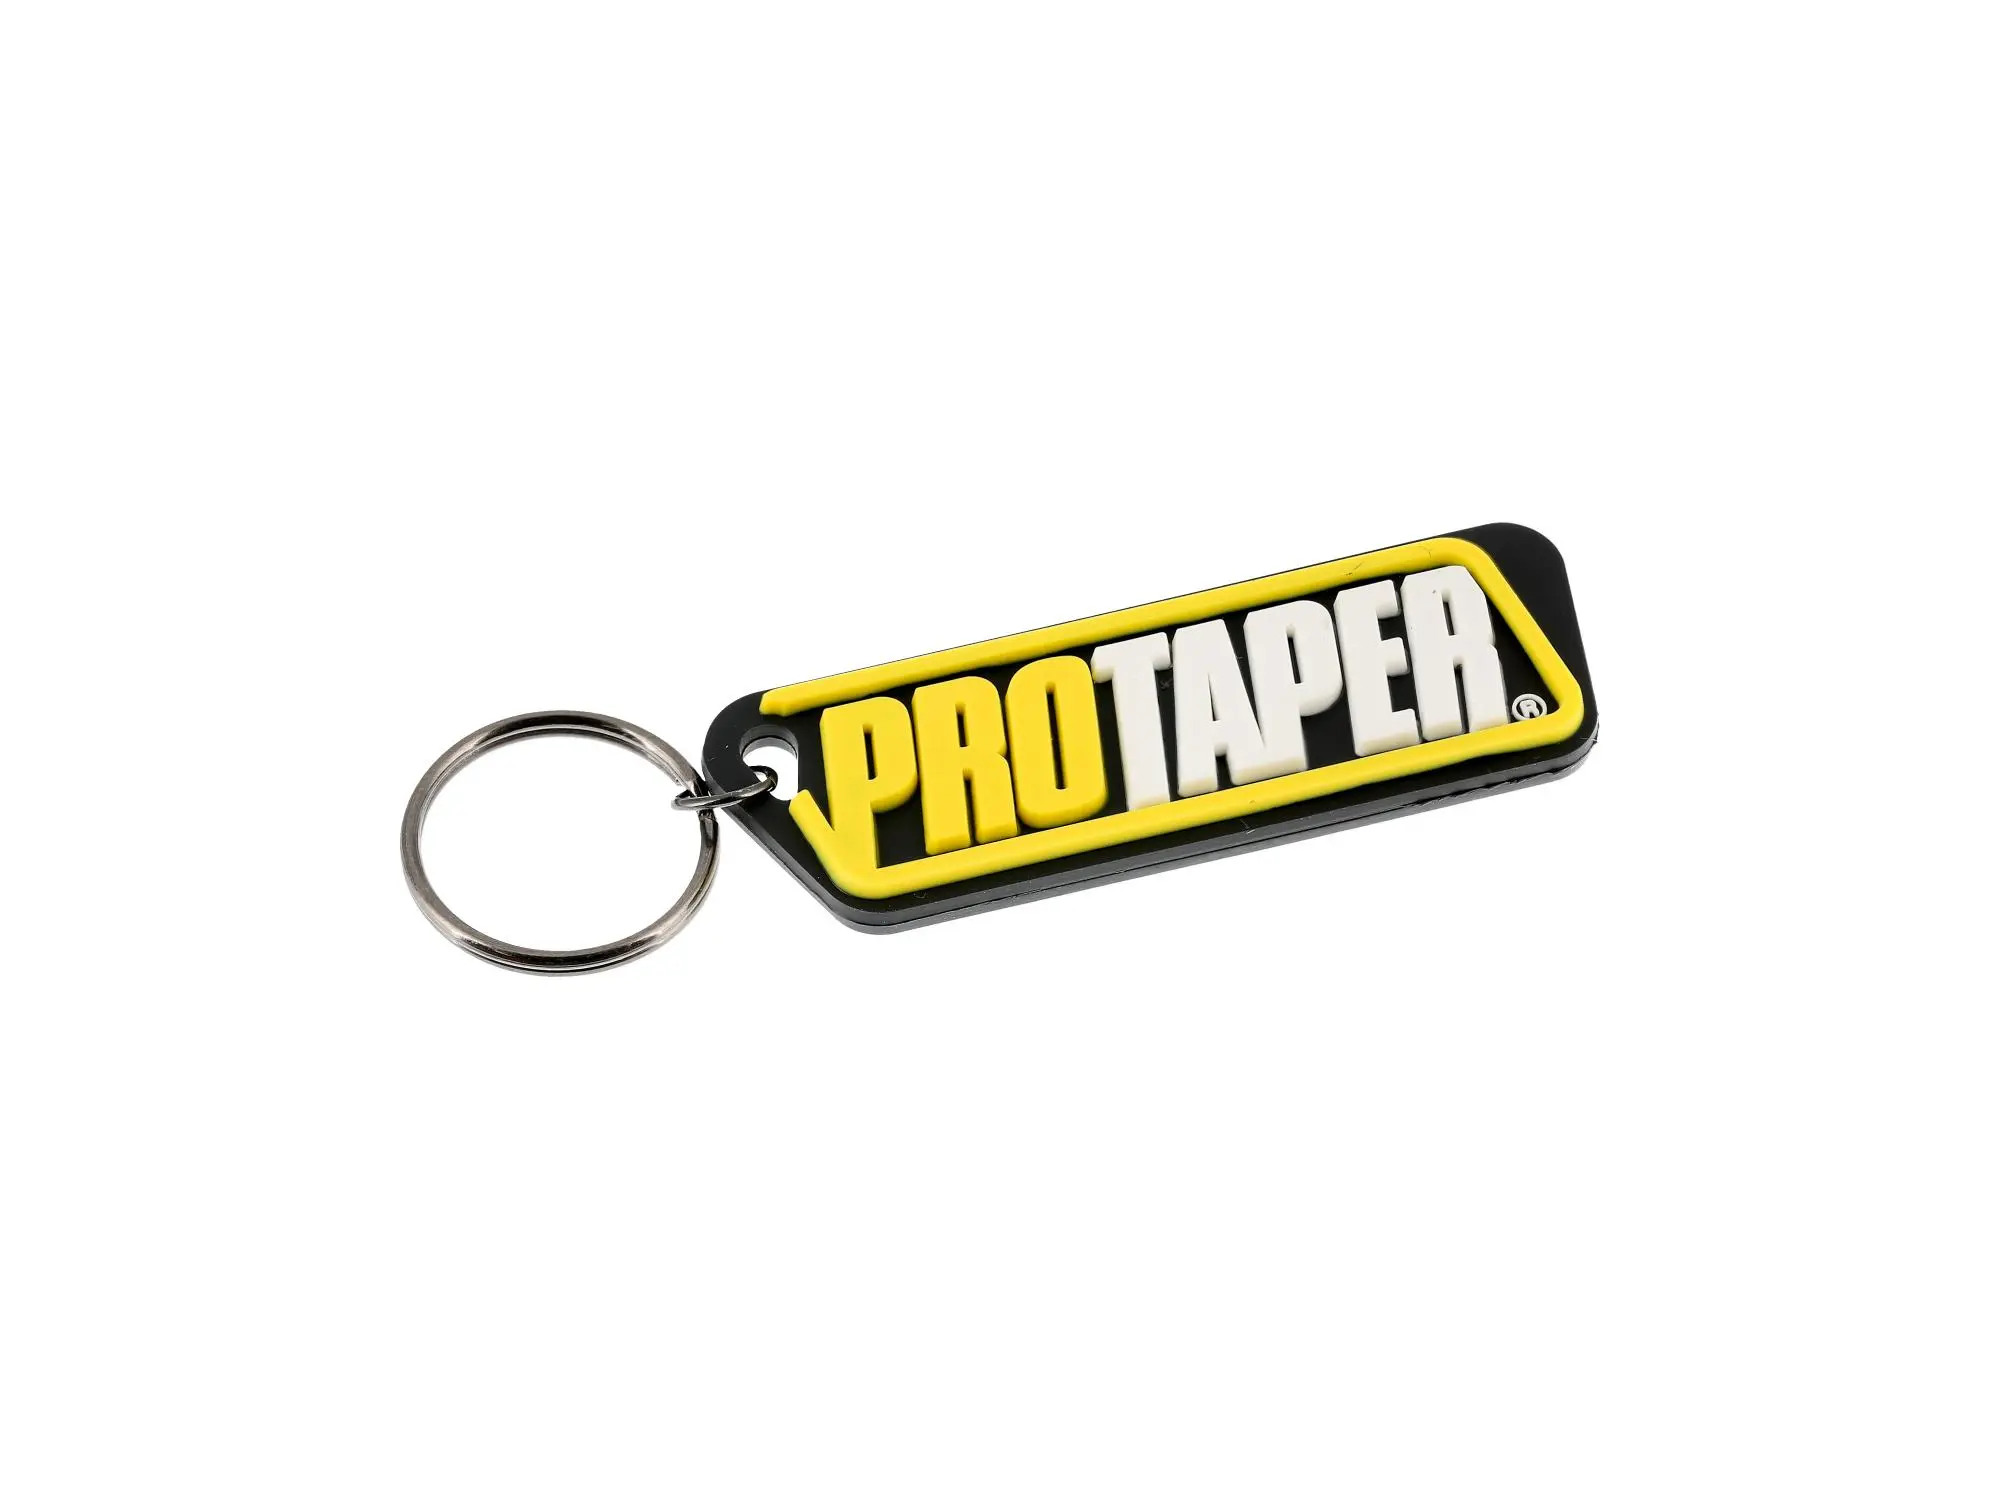 Schlüsselanhänger ProTaper aus Soft-PVC, mit Schlüsselring, Art.-Nr.: 10068961 - Bild 1